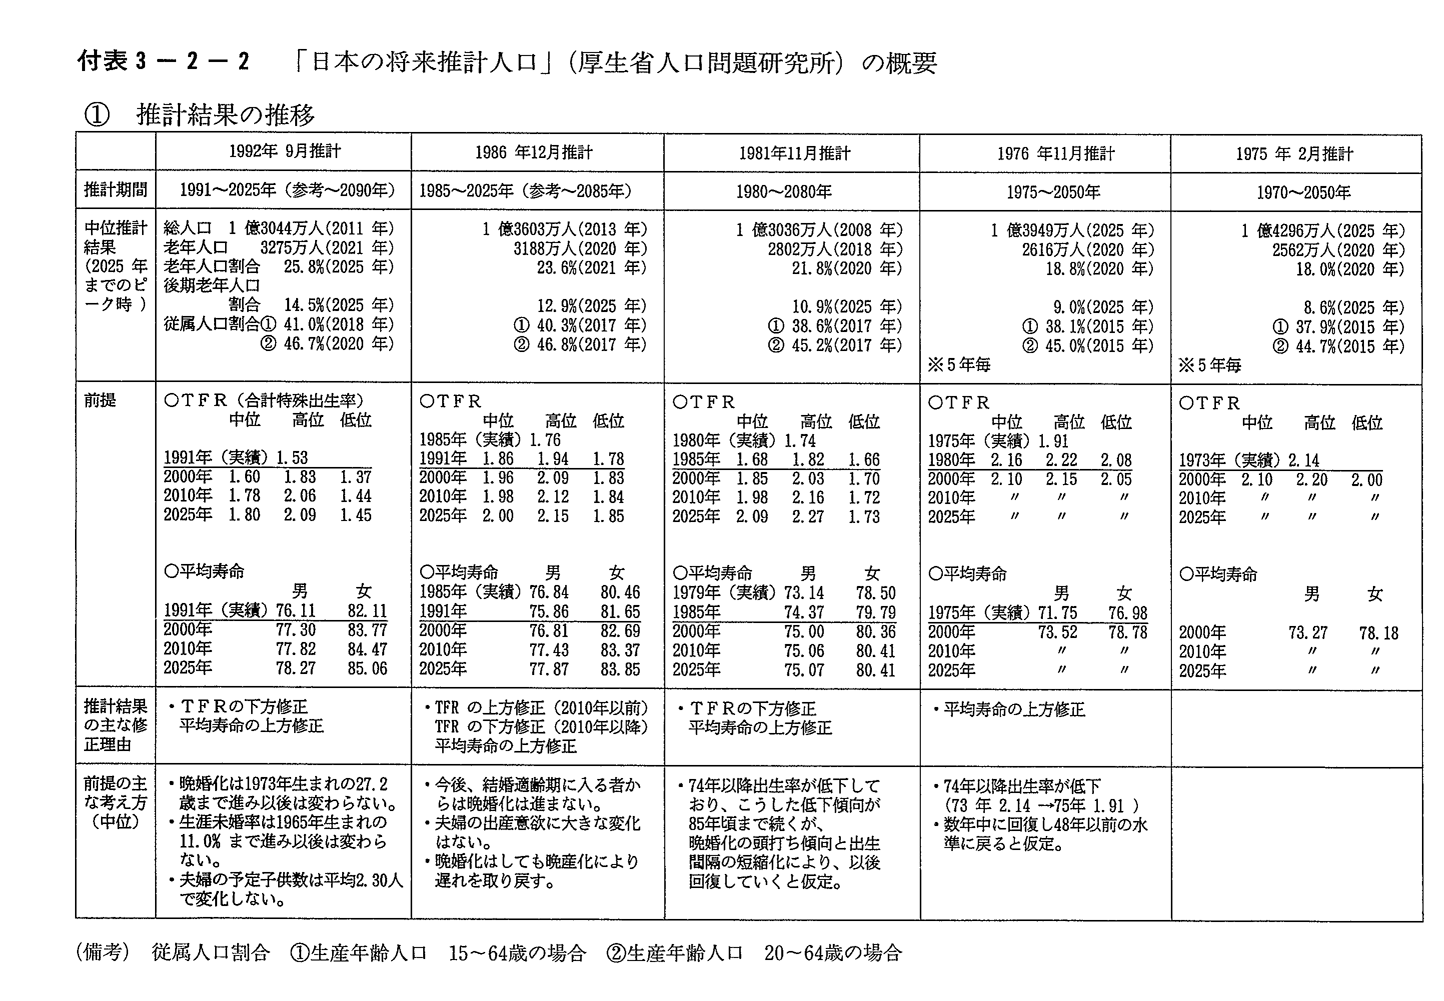 付表3-2-2　「日本の将来推計人口」(厚生省人口問題研究所)の概要